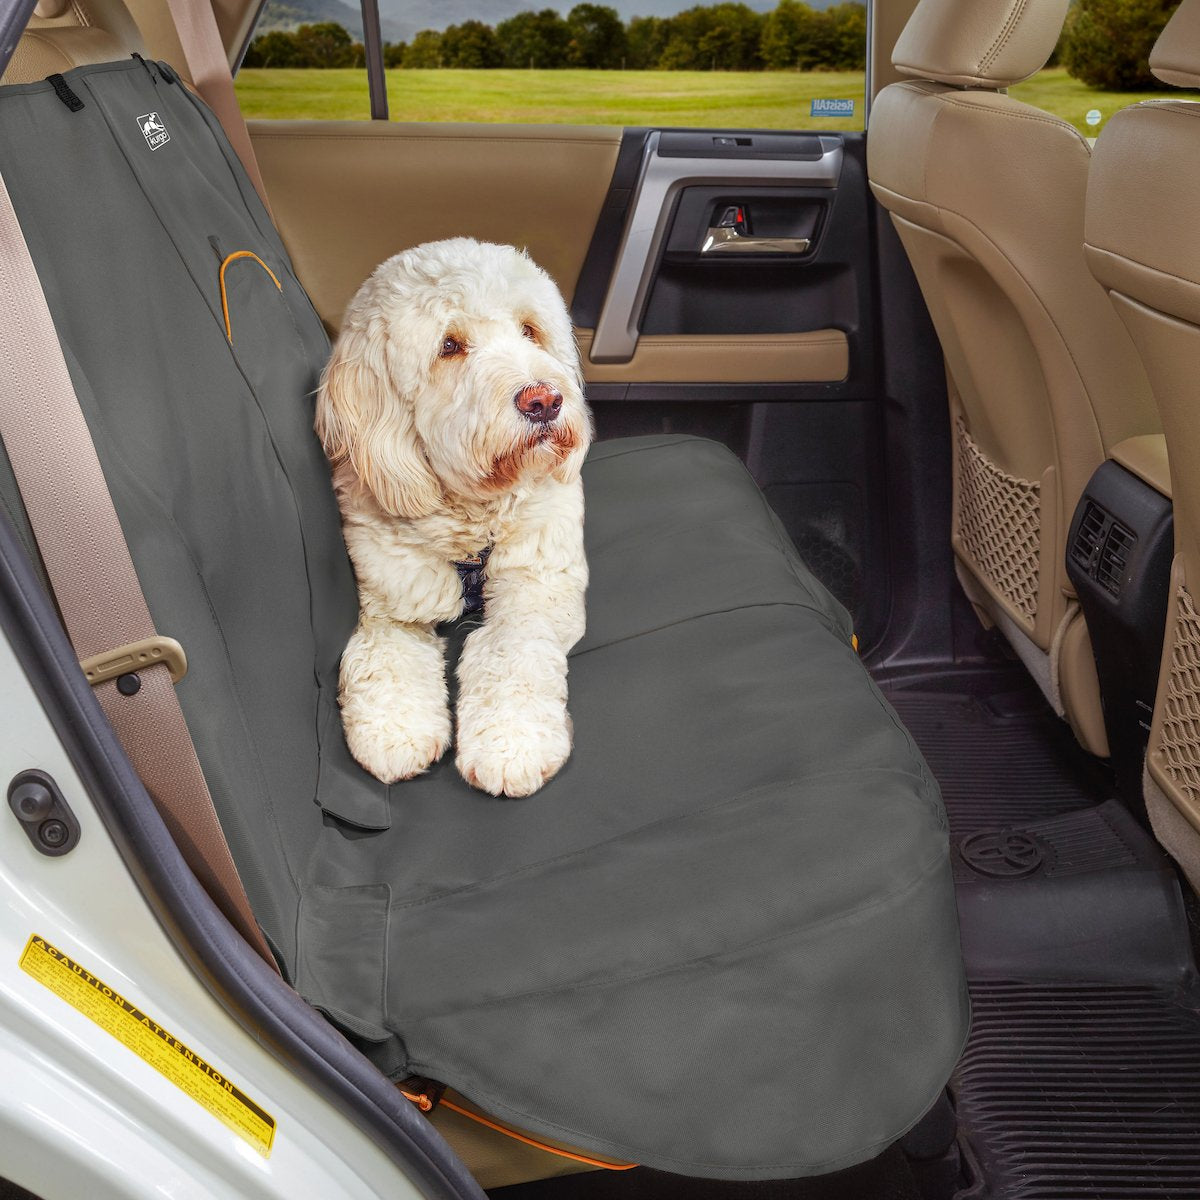 Housse protection siège voiture chien - Équipement auto